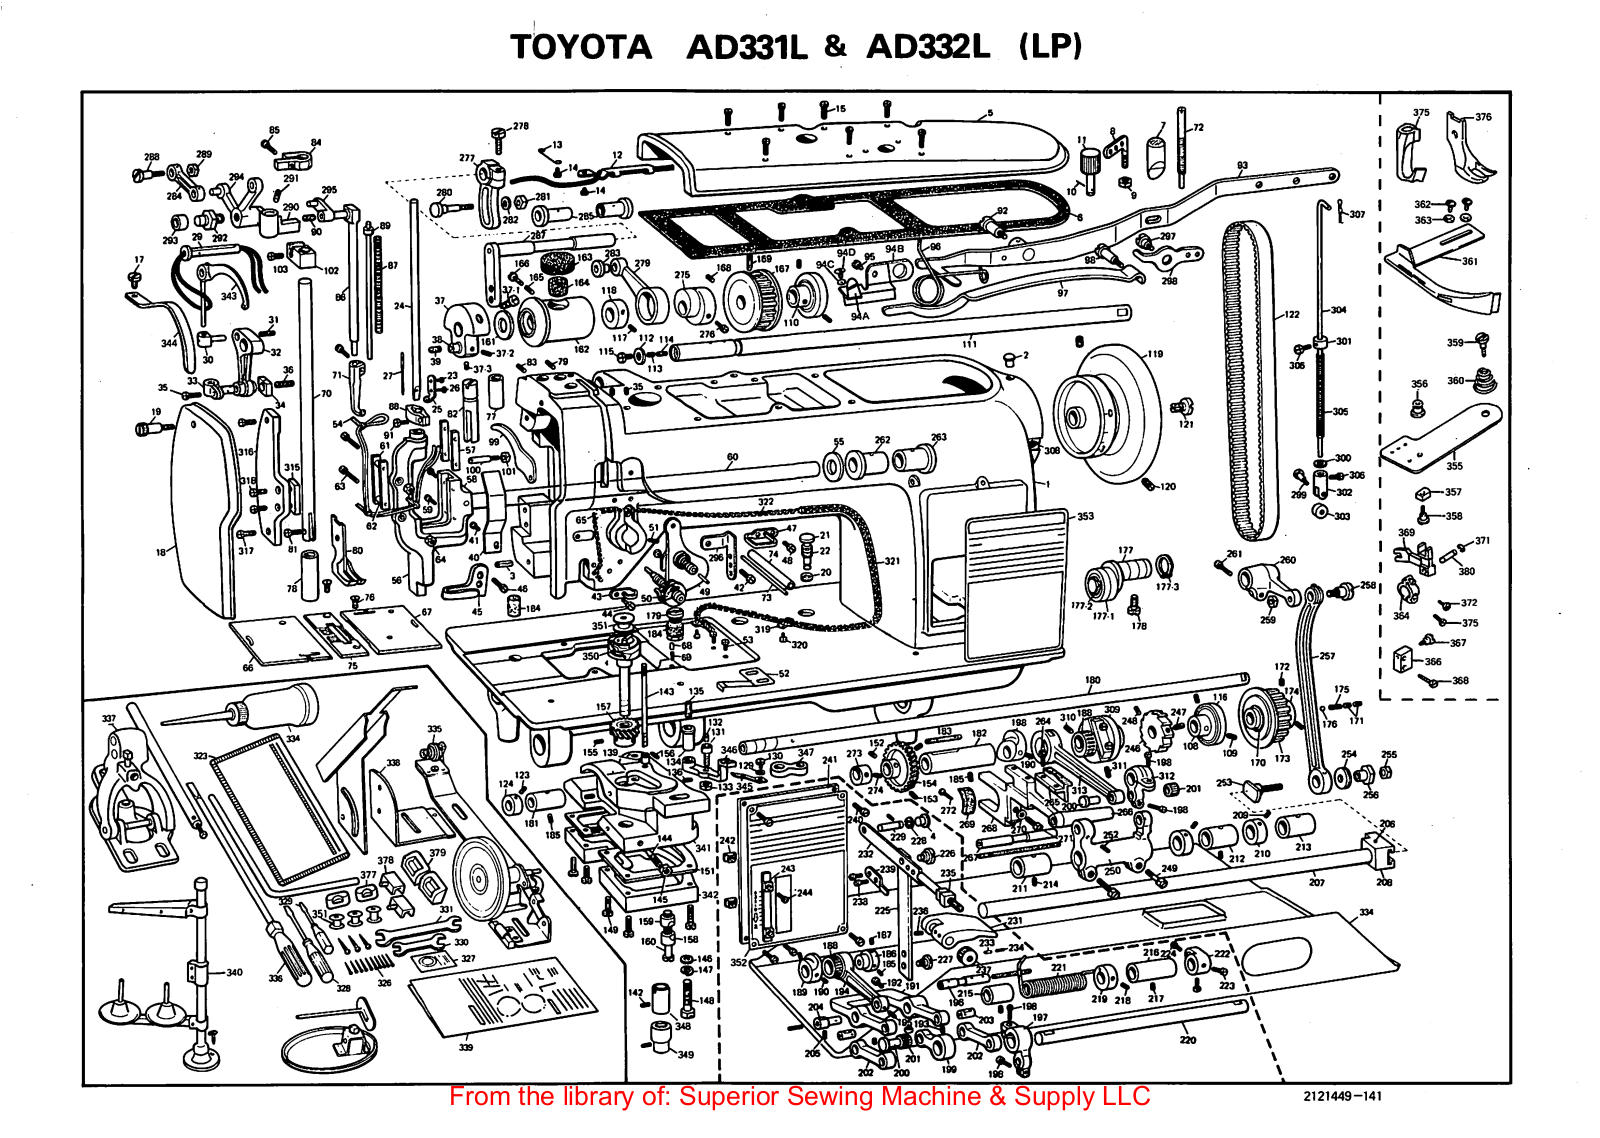 Toyota AD331L, AD332L Manual